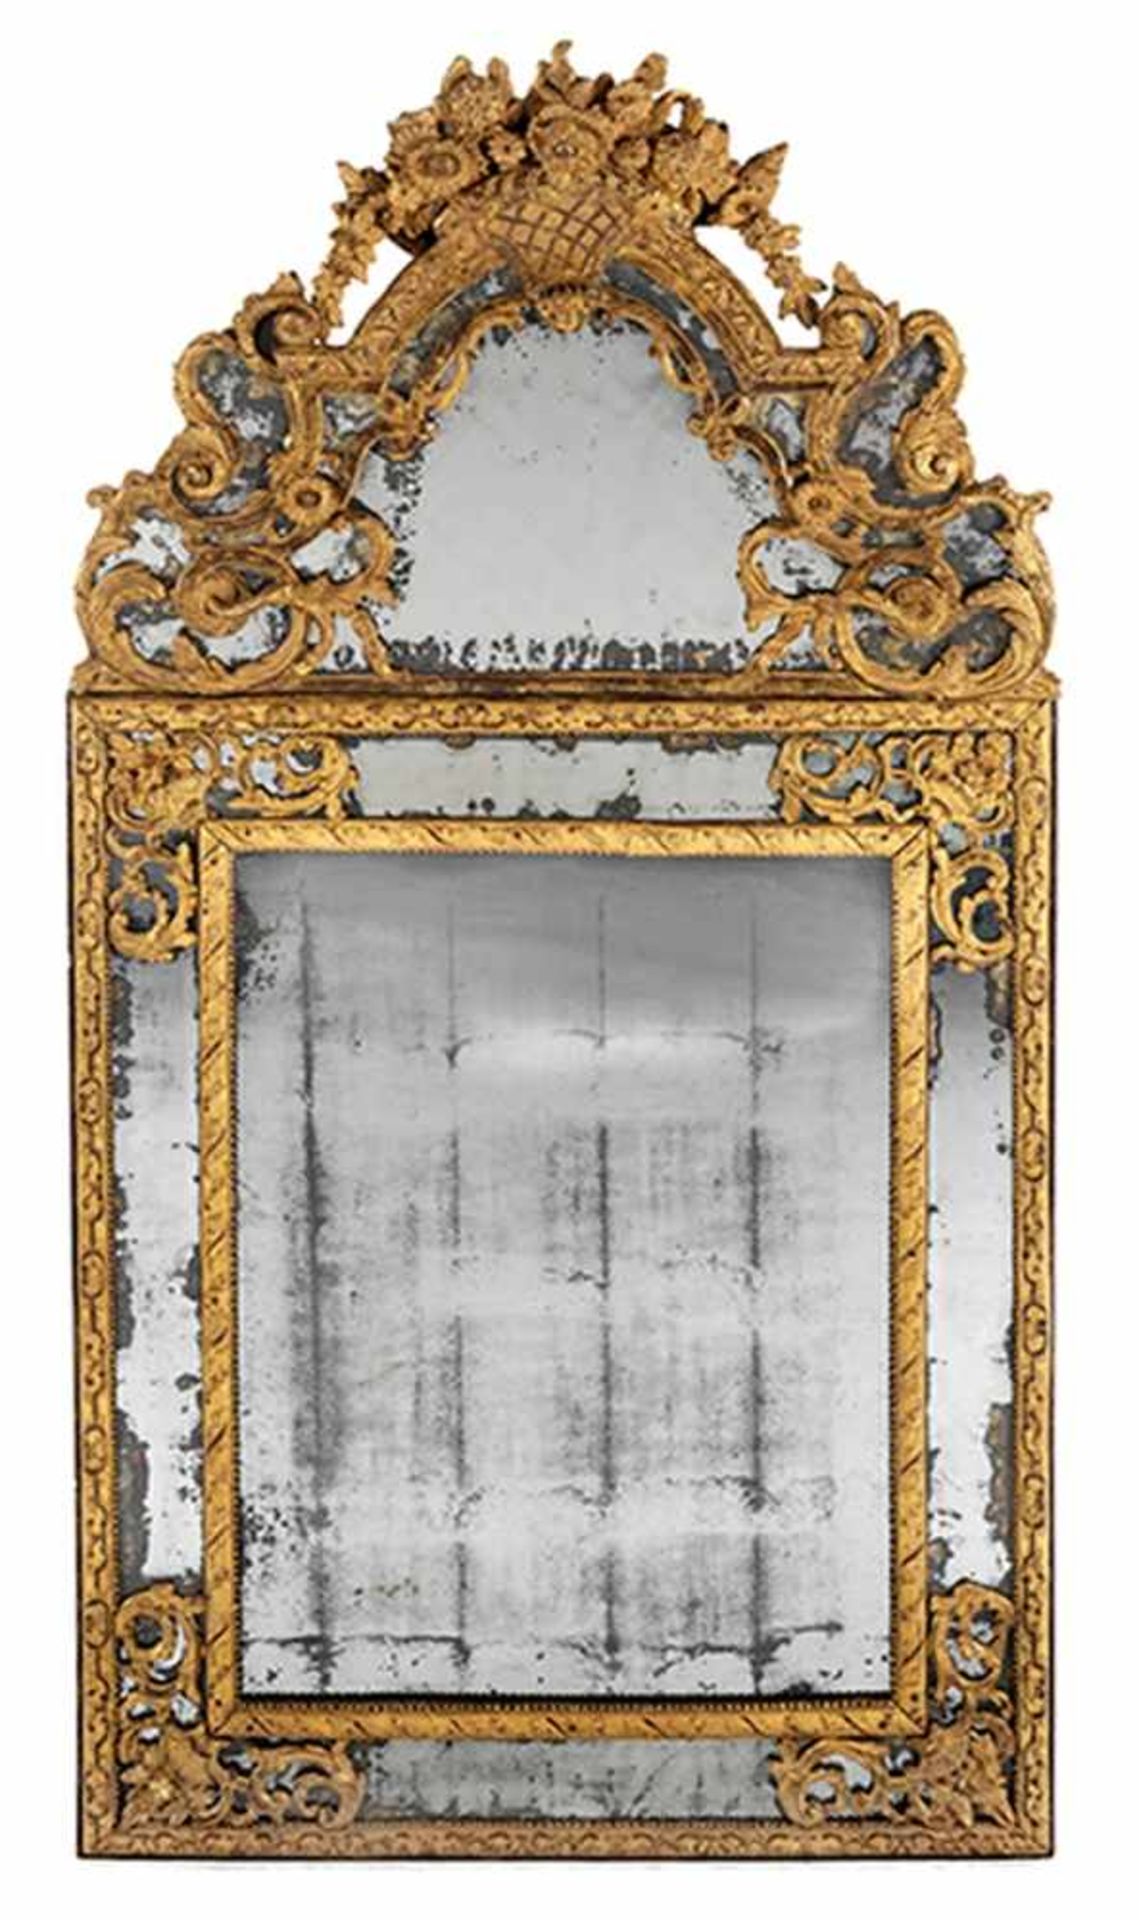 Großer Pariser Salonspiegel Höhe: 150 cm. Breite: 78 cm. Paris, frühes 18. Jahrhundert. Holz, - Bild 4 aus 5